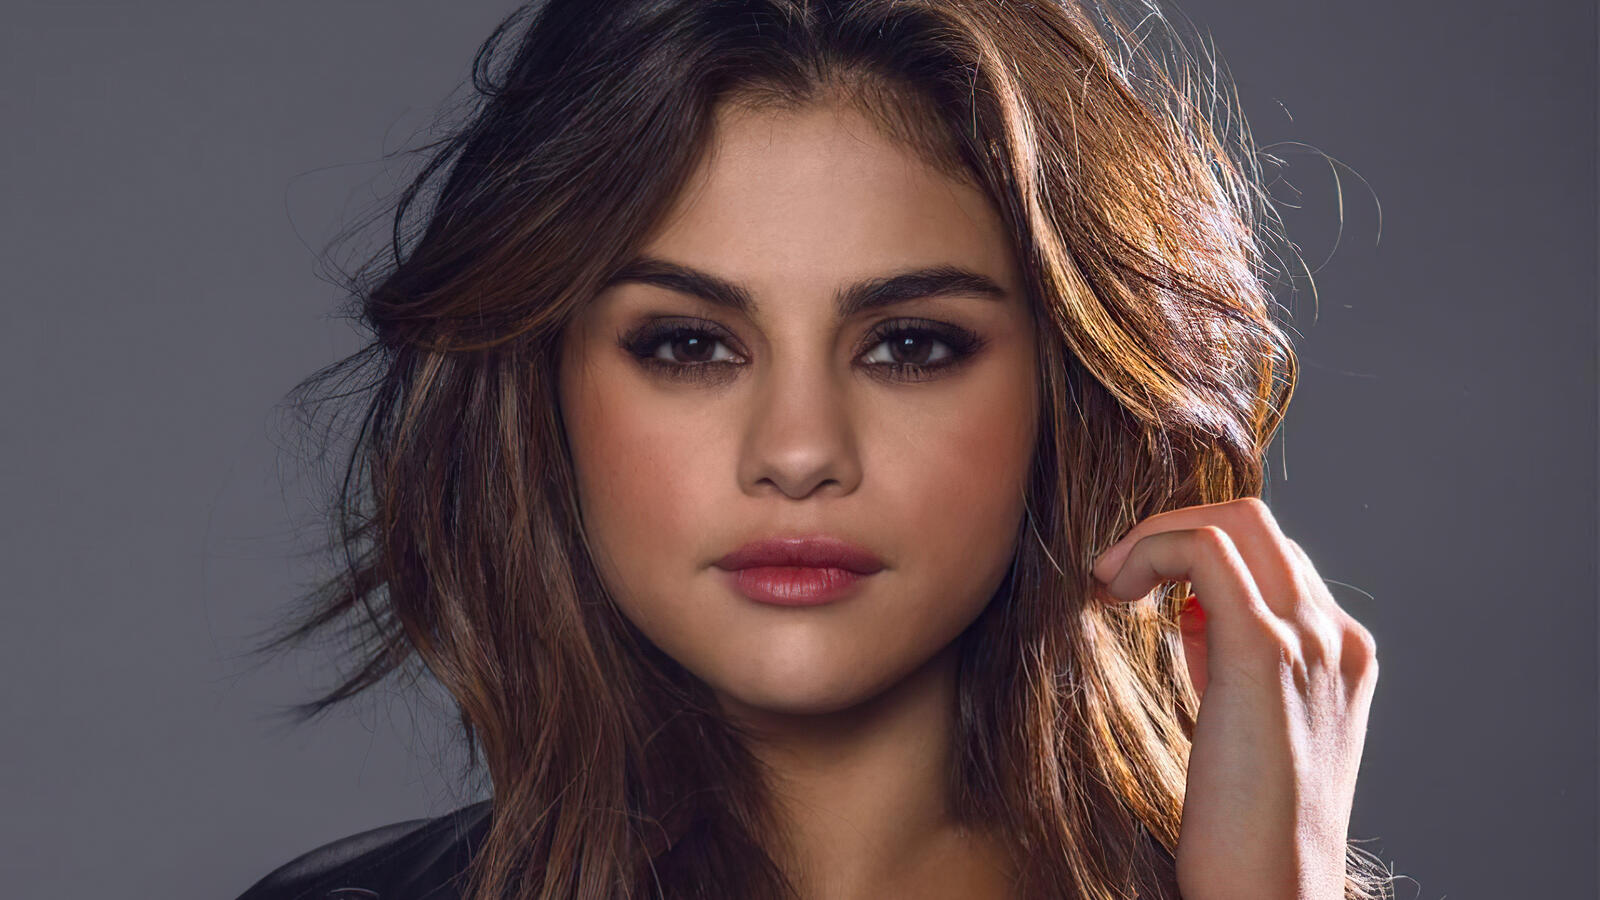 Wallpapers Selena Gomez music celebrities on the desktop